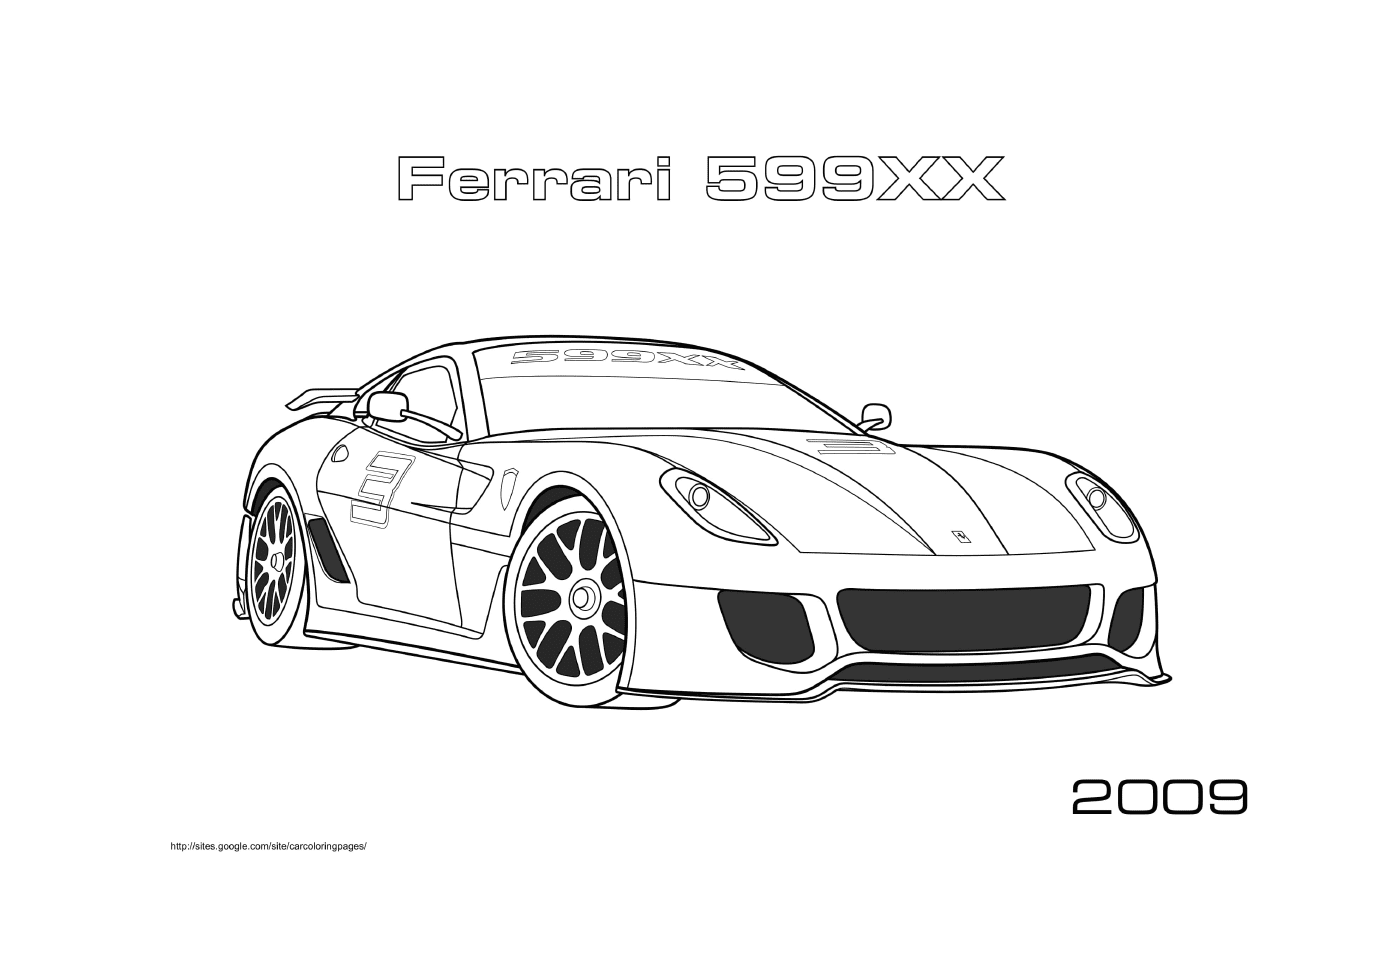  Автомобиль Ferrari 599xx2009 